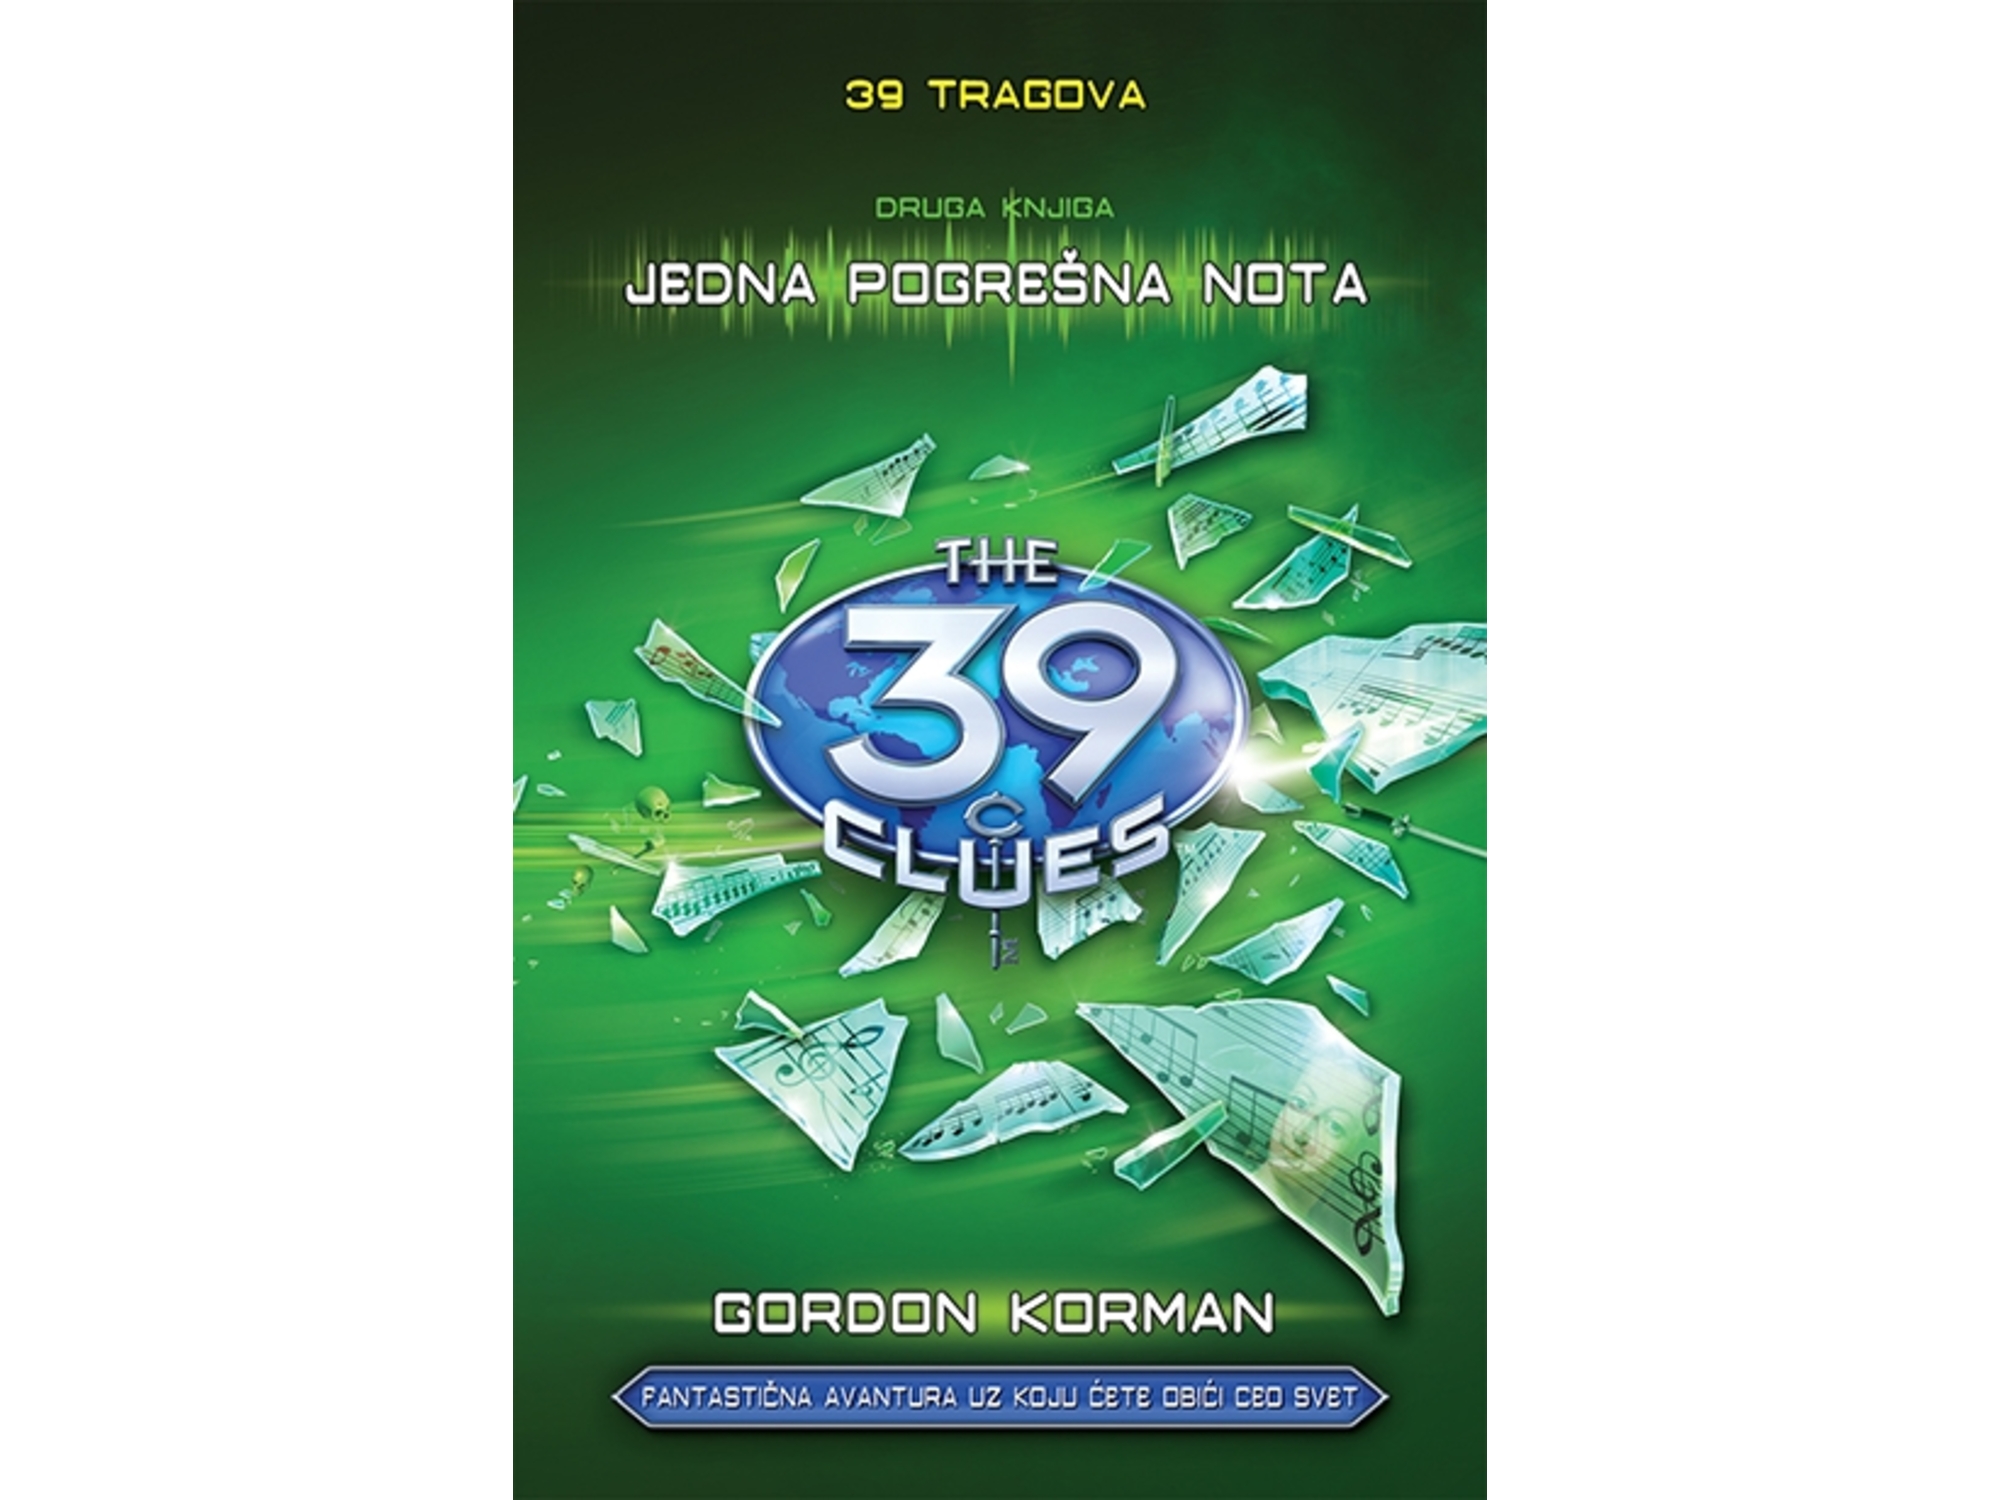 39 tragova: Jedna pogrešna nota – druga knjiga - Gordon Korman